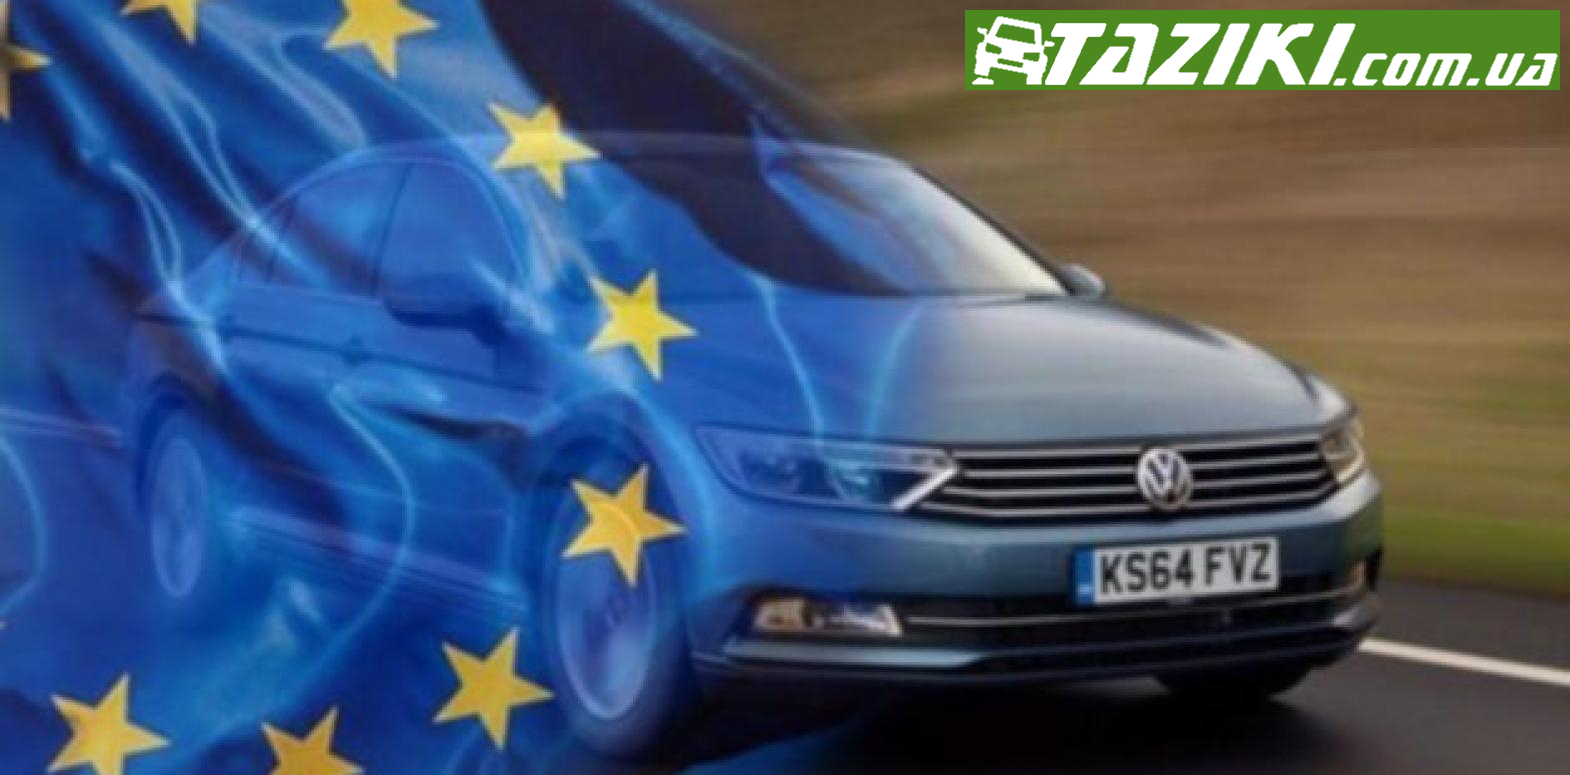 09876544678909876564 Как выбрать и купить идеальное авто из Европы в кредит